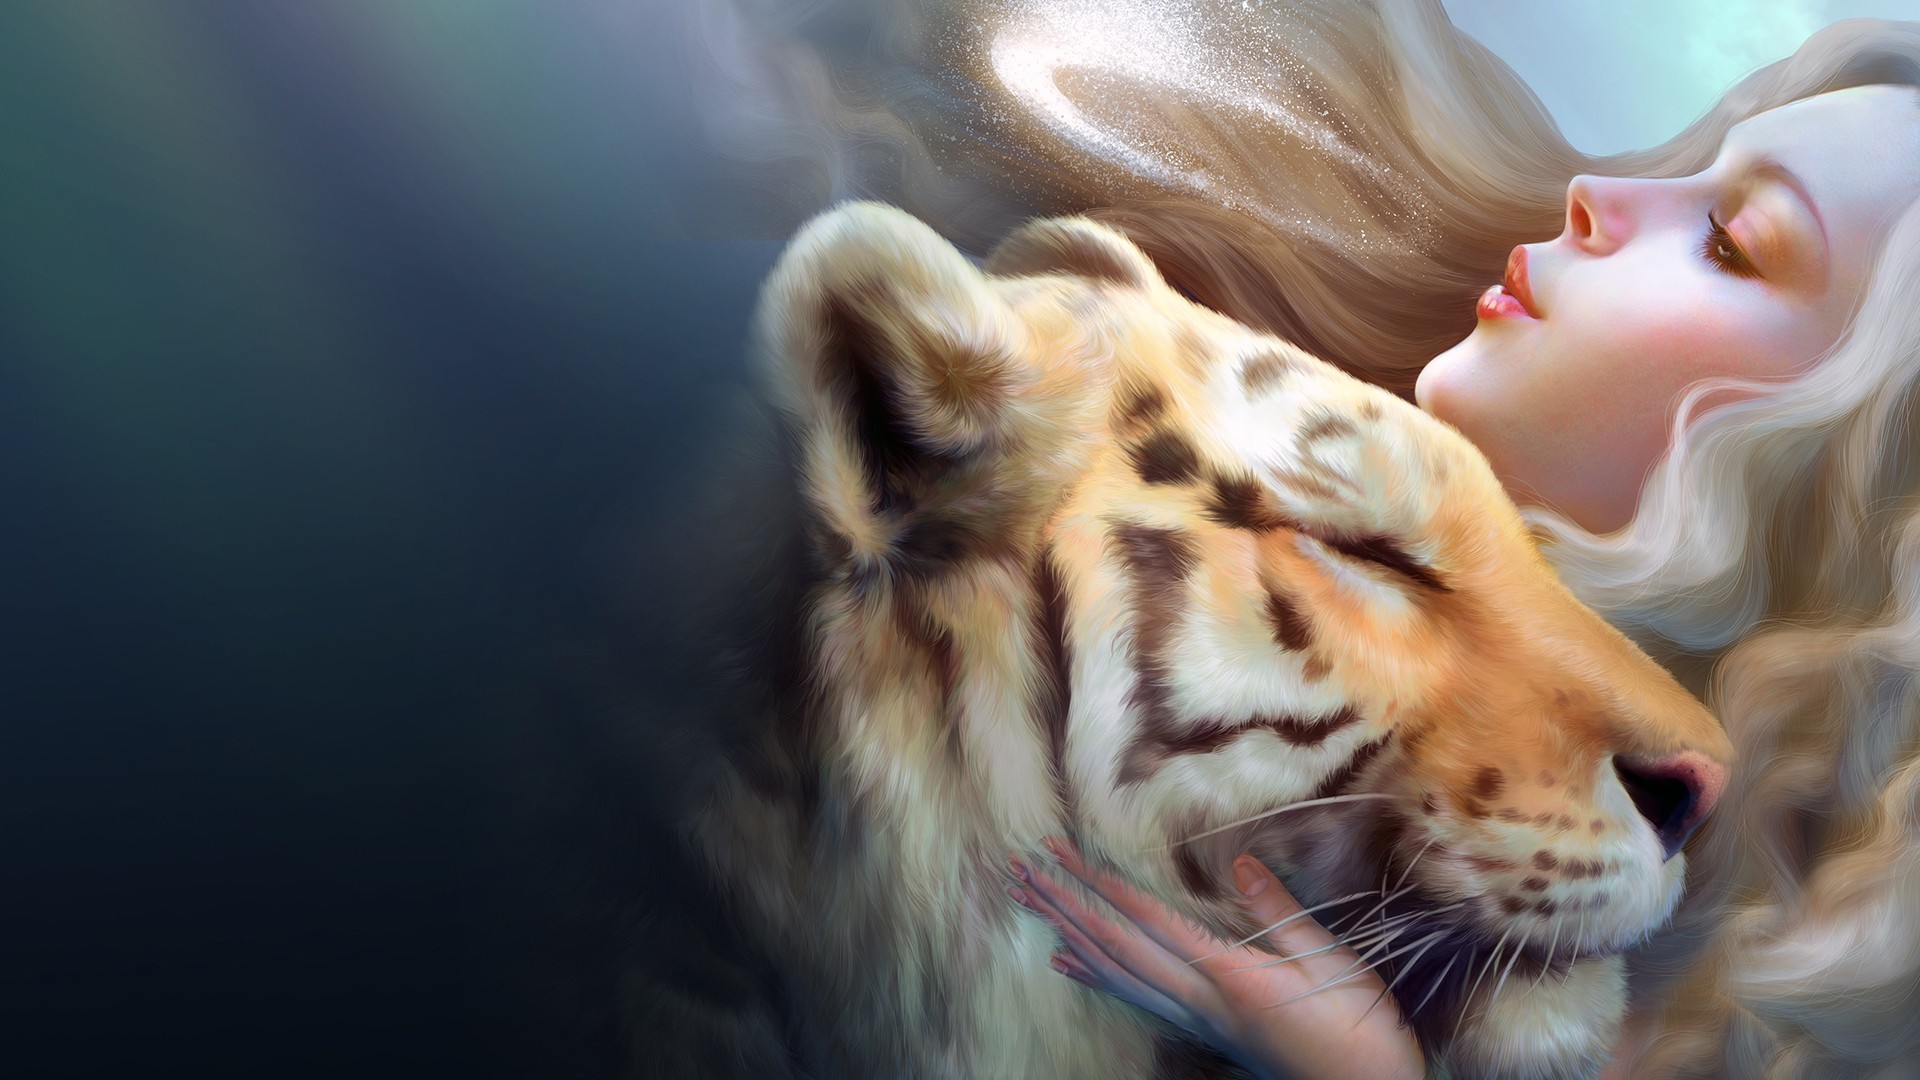 Fantasy Animal Cg Digital Art Tiger Women Love Mood Wallpaper